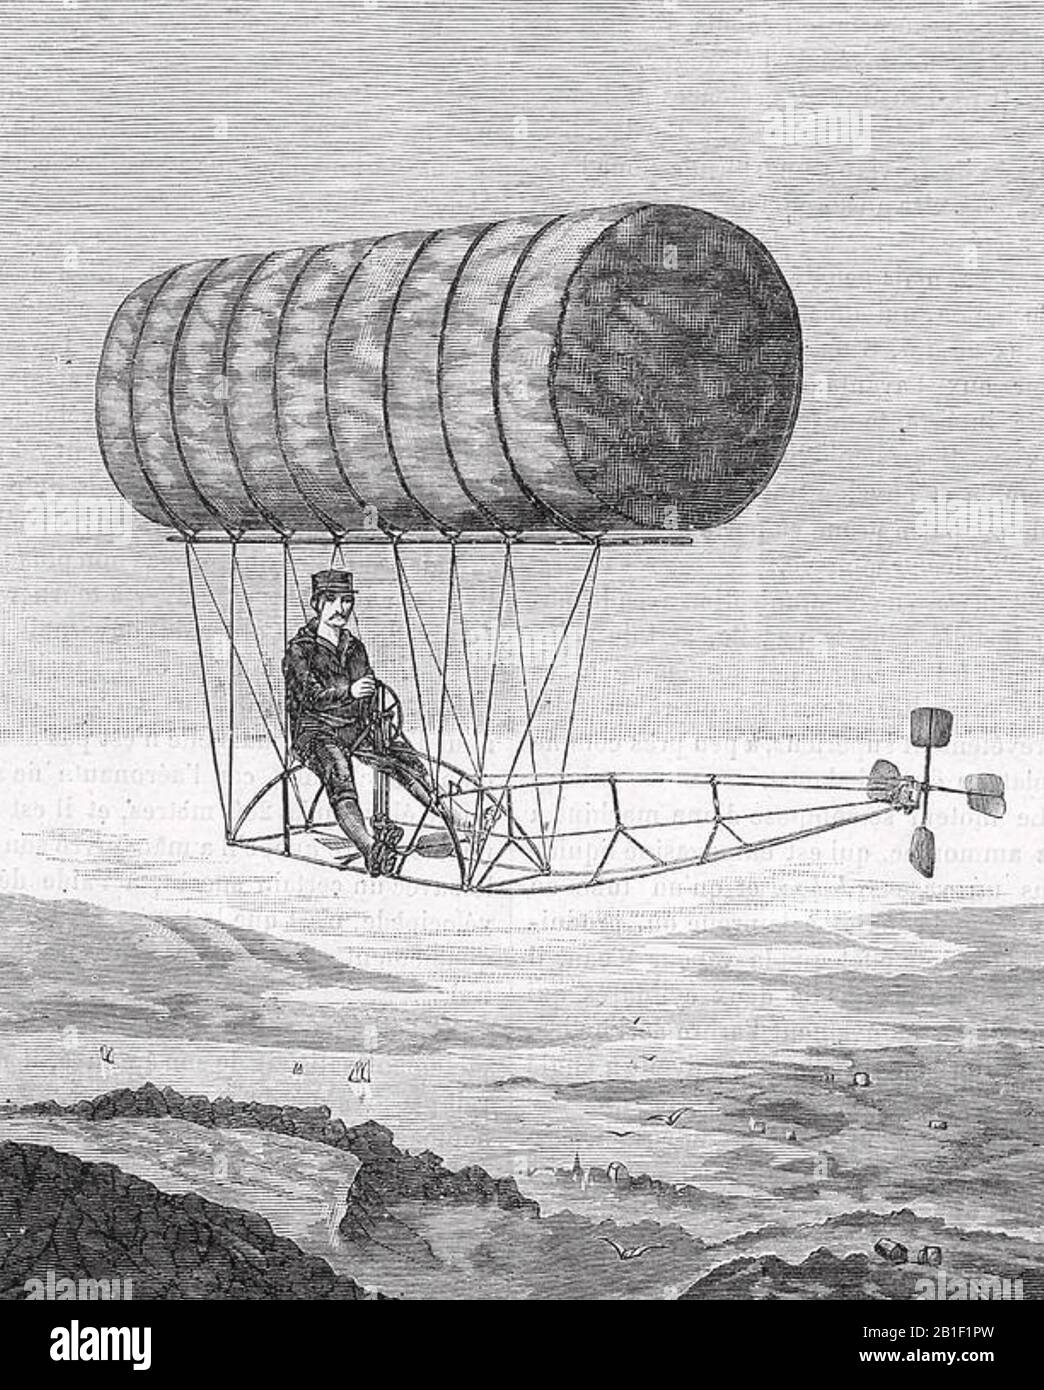 Charles RITCHEL (1844-1911) inventor estadounidense en su dirigible en 1878 Foto de stock